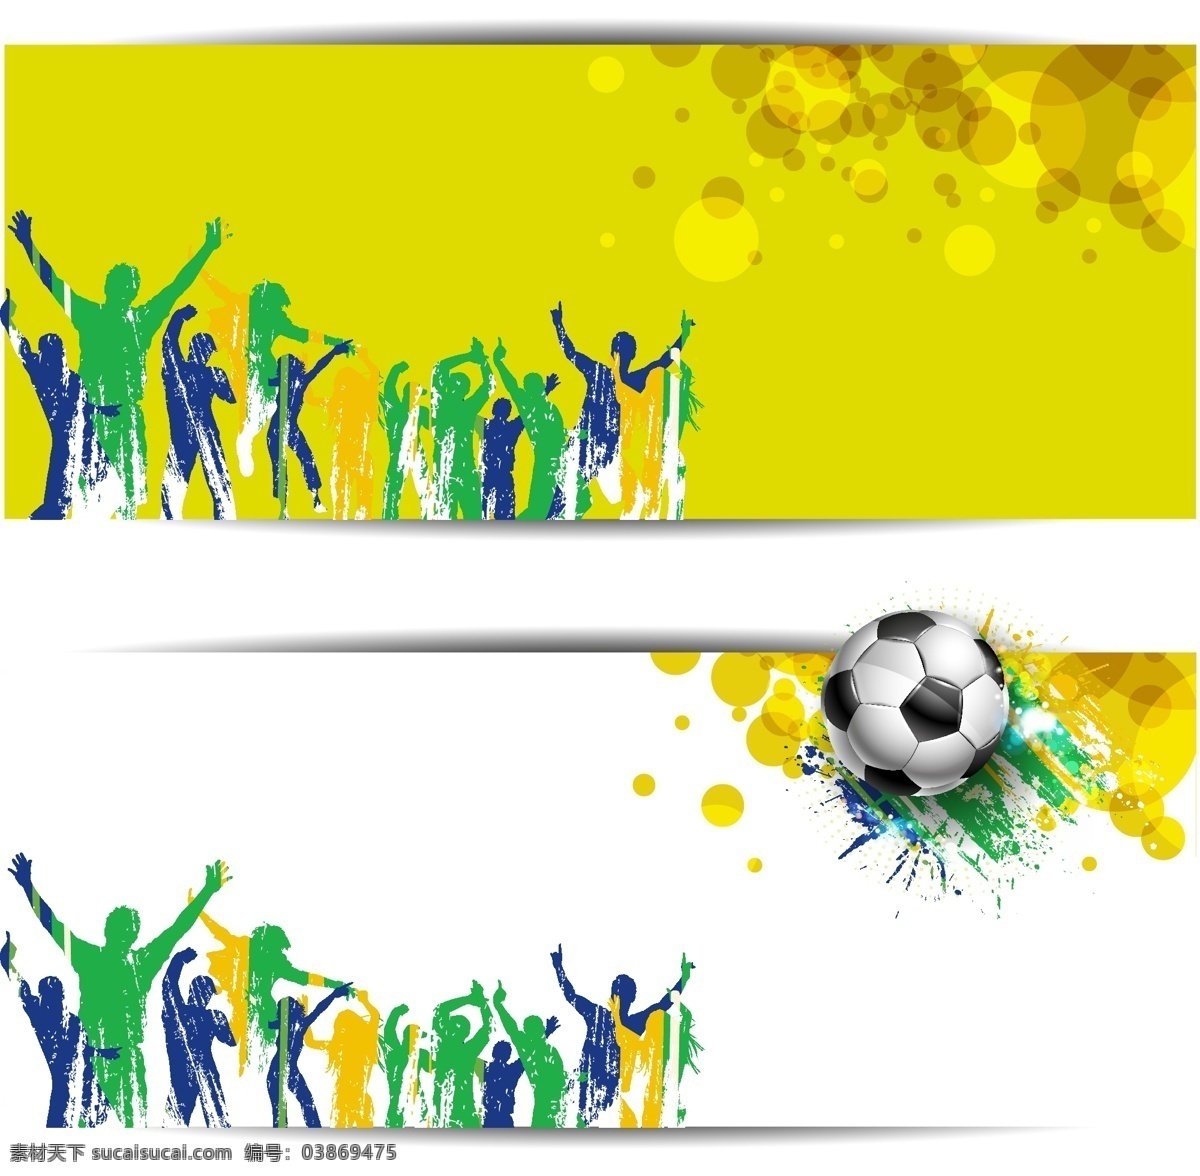 世界杯 海报 背景 模板下载 梦幻背景 人物剪影 足球赛事 足球比赛 体育运动 生活百科 矢量素材 白色